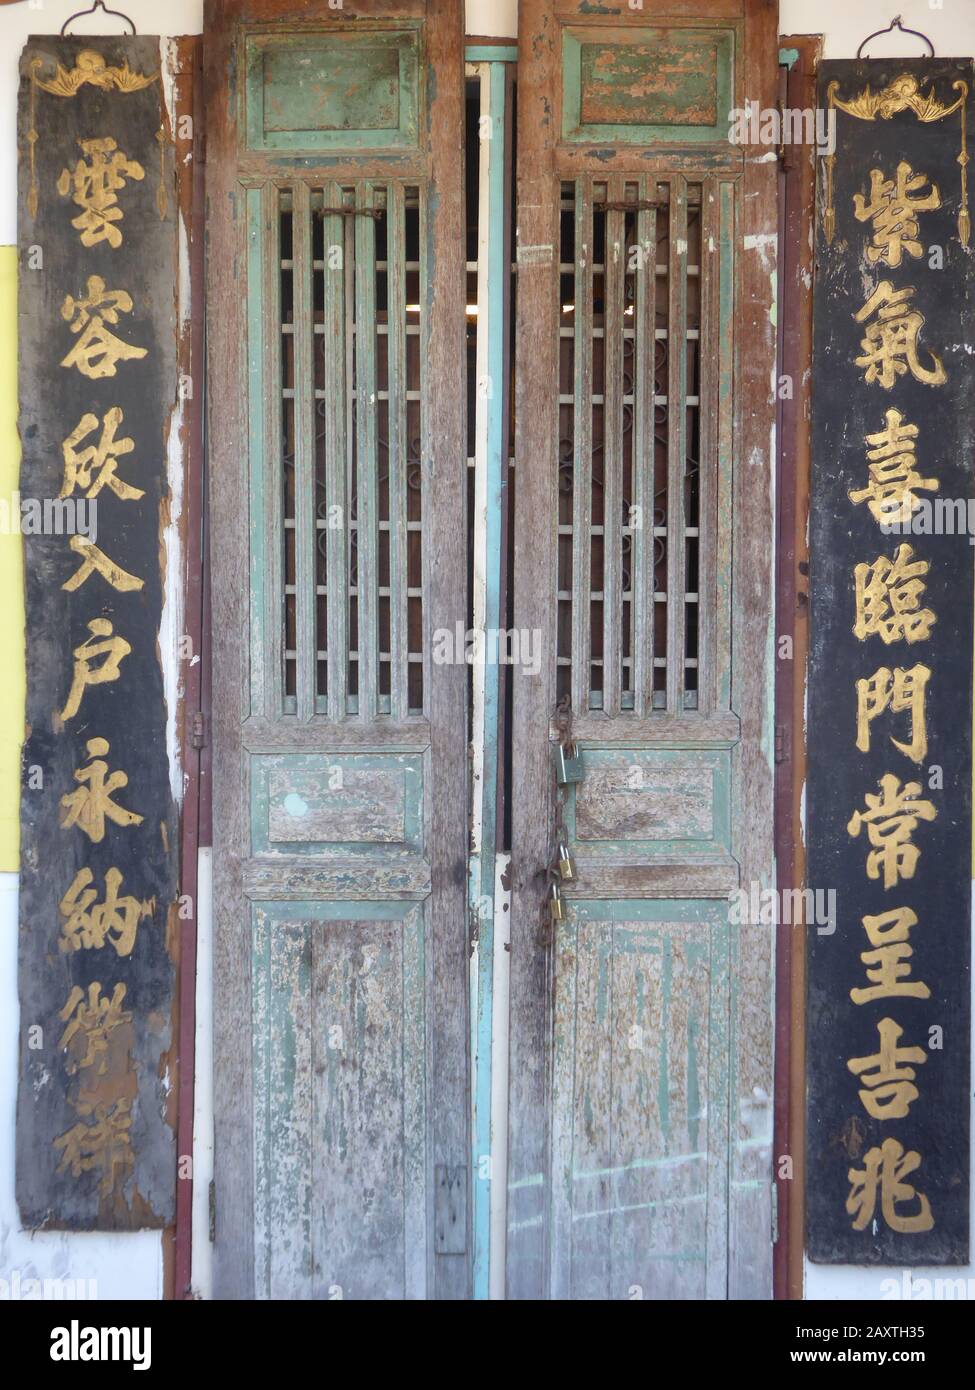 Belle vieille porte traditionnelle chinoise, décorée de caractères chinois Banque D'Images